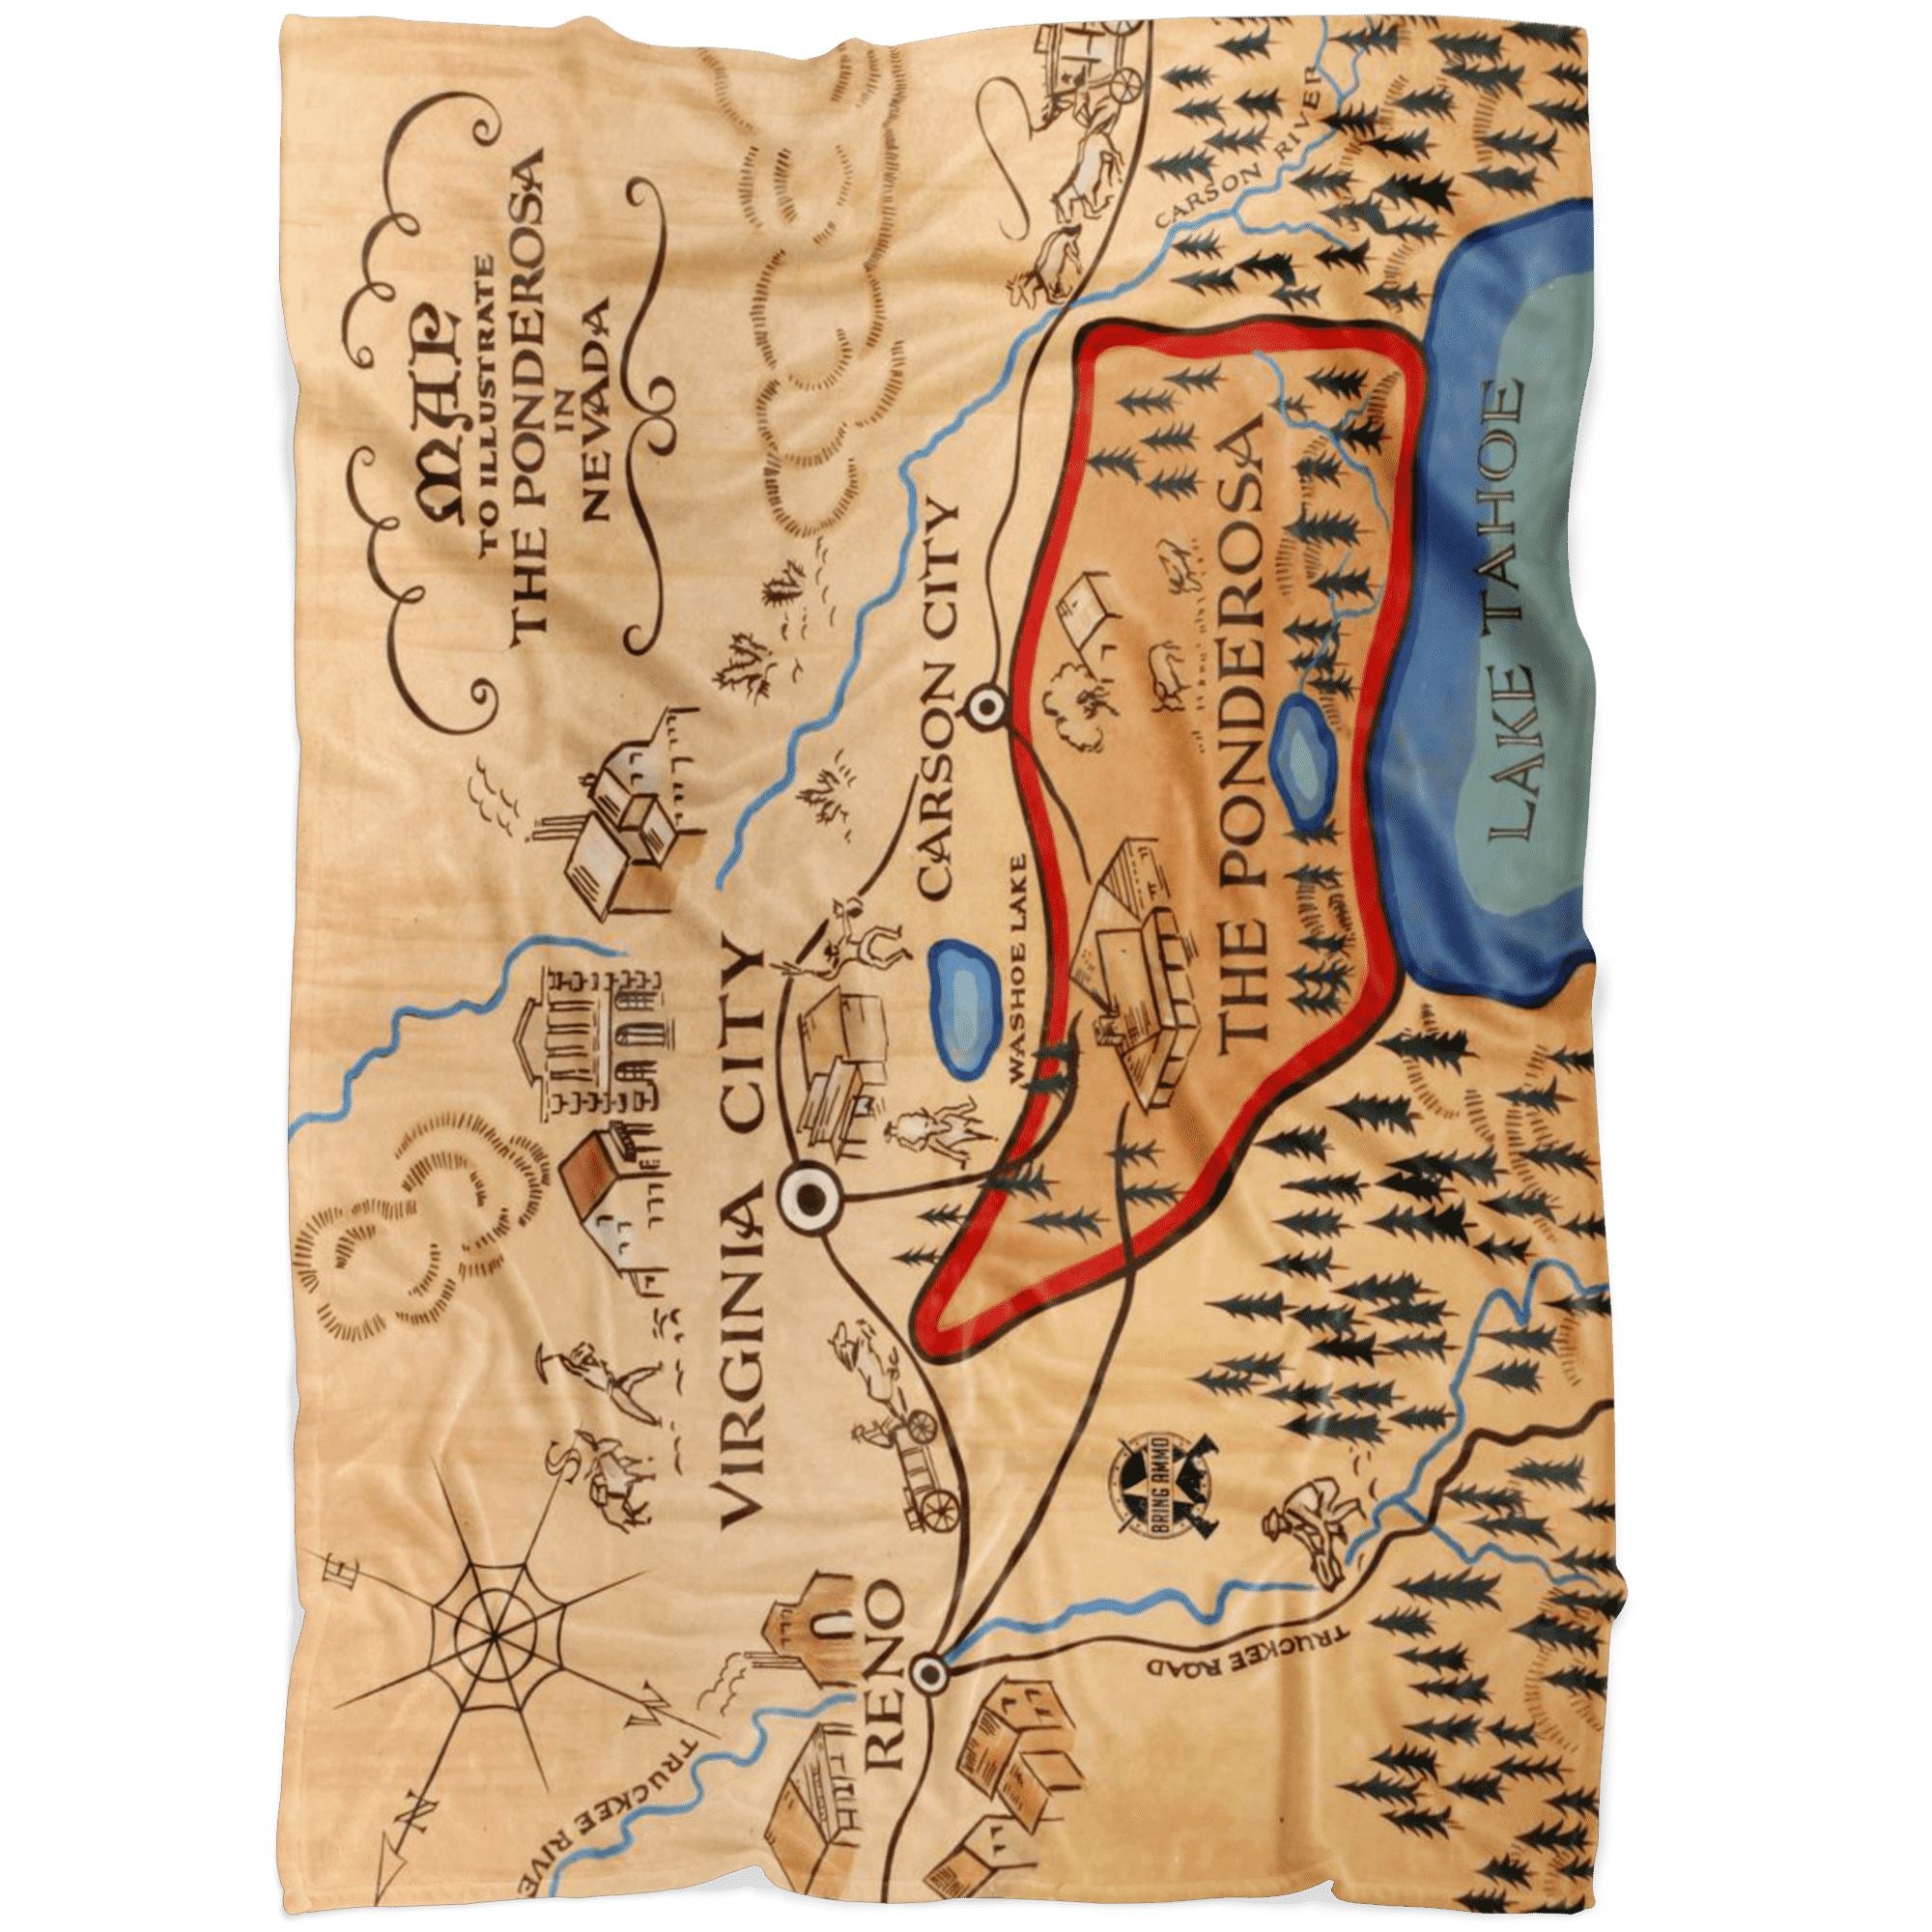 Ponderosa Map from Bonanza Fleece Blanket Blankets LARGE (60"X50") 